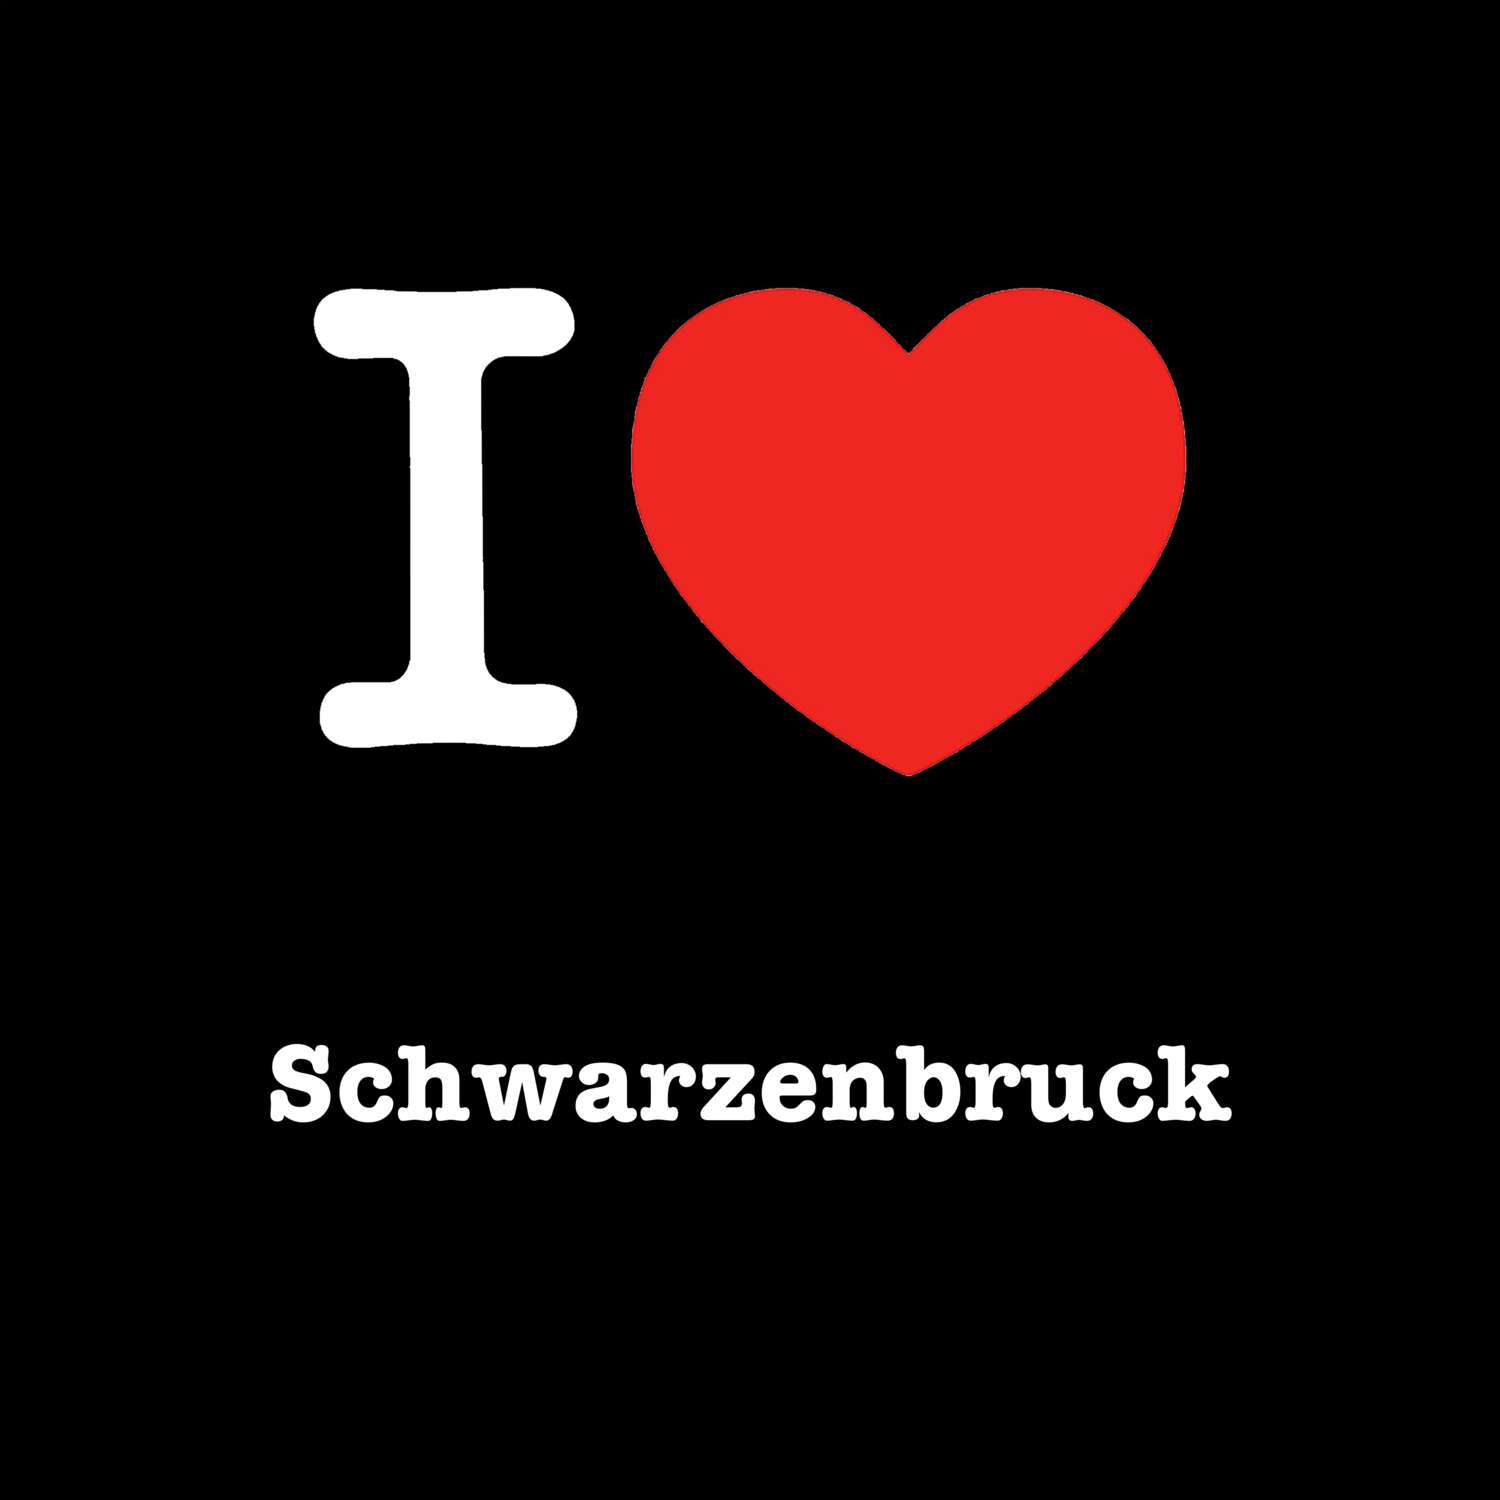 Schwarzenbruck T-Shirt »I love«